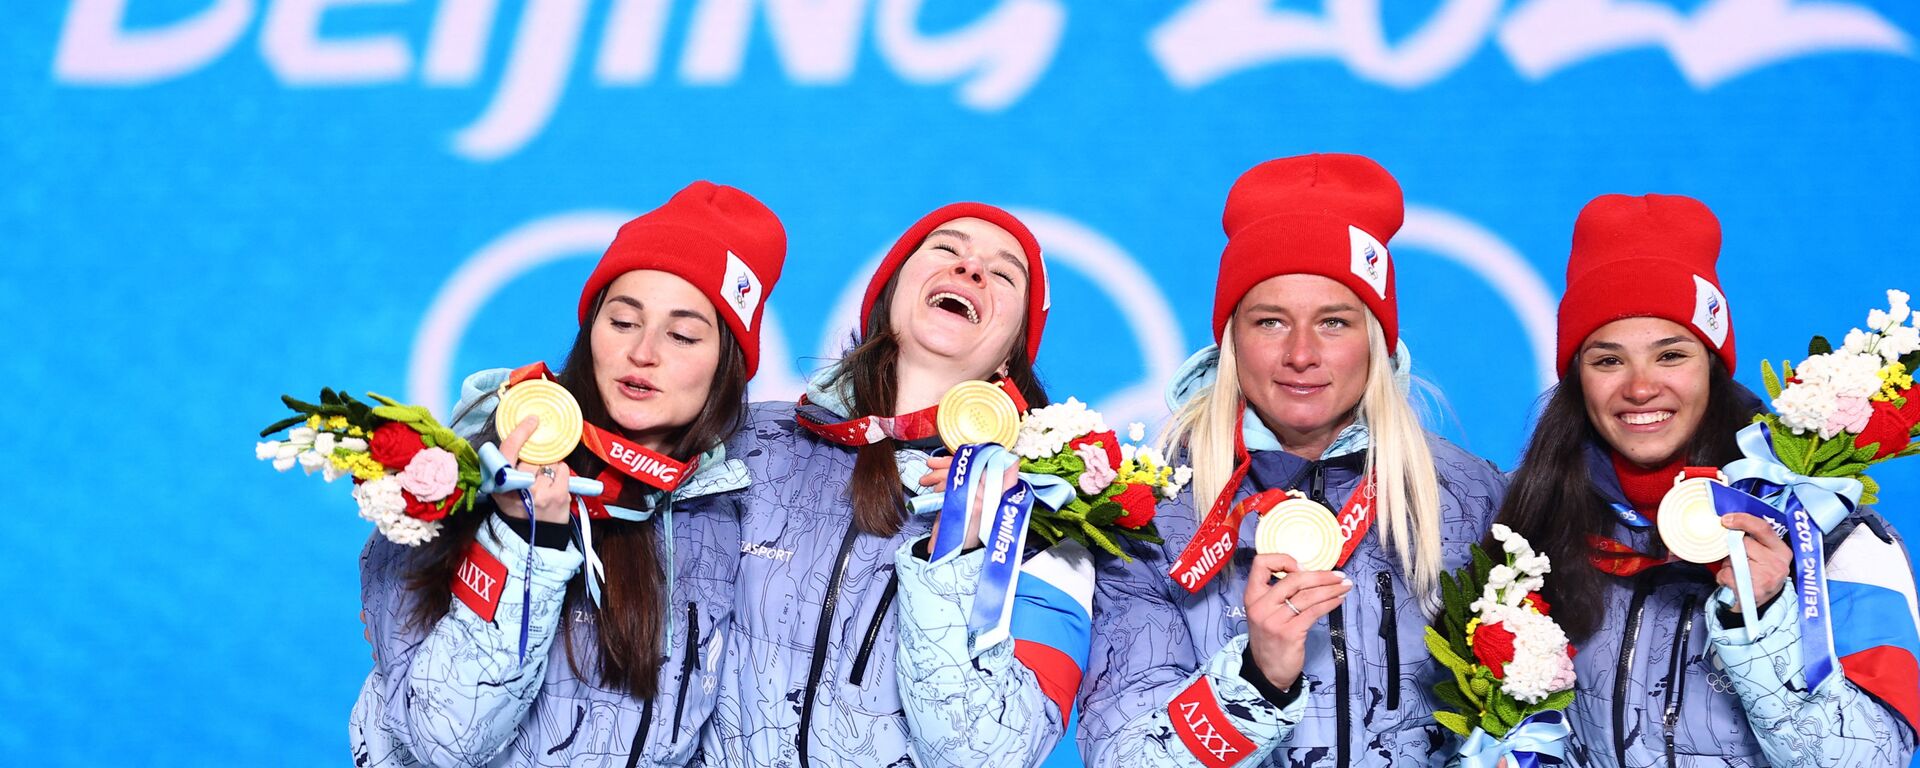  Российские спортсменки, завоевавшие золотые медали в эстафетной лыжной гонке 4 х 5 км среди женщин на XXIV зимних Олимпийских играх в Пекине - Sputnik Латвия, 1920, 09.03.2022